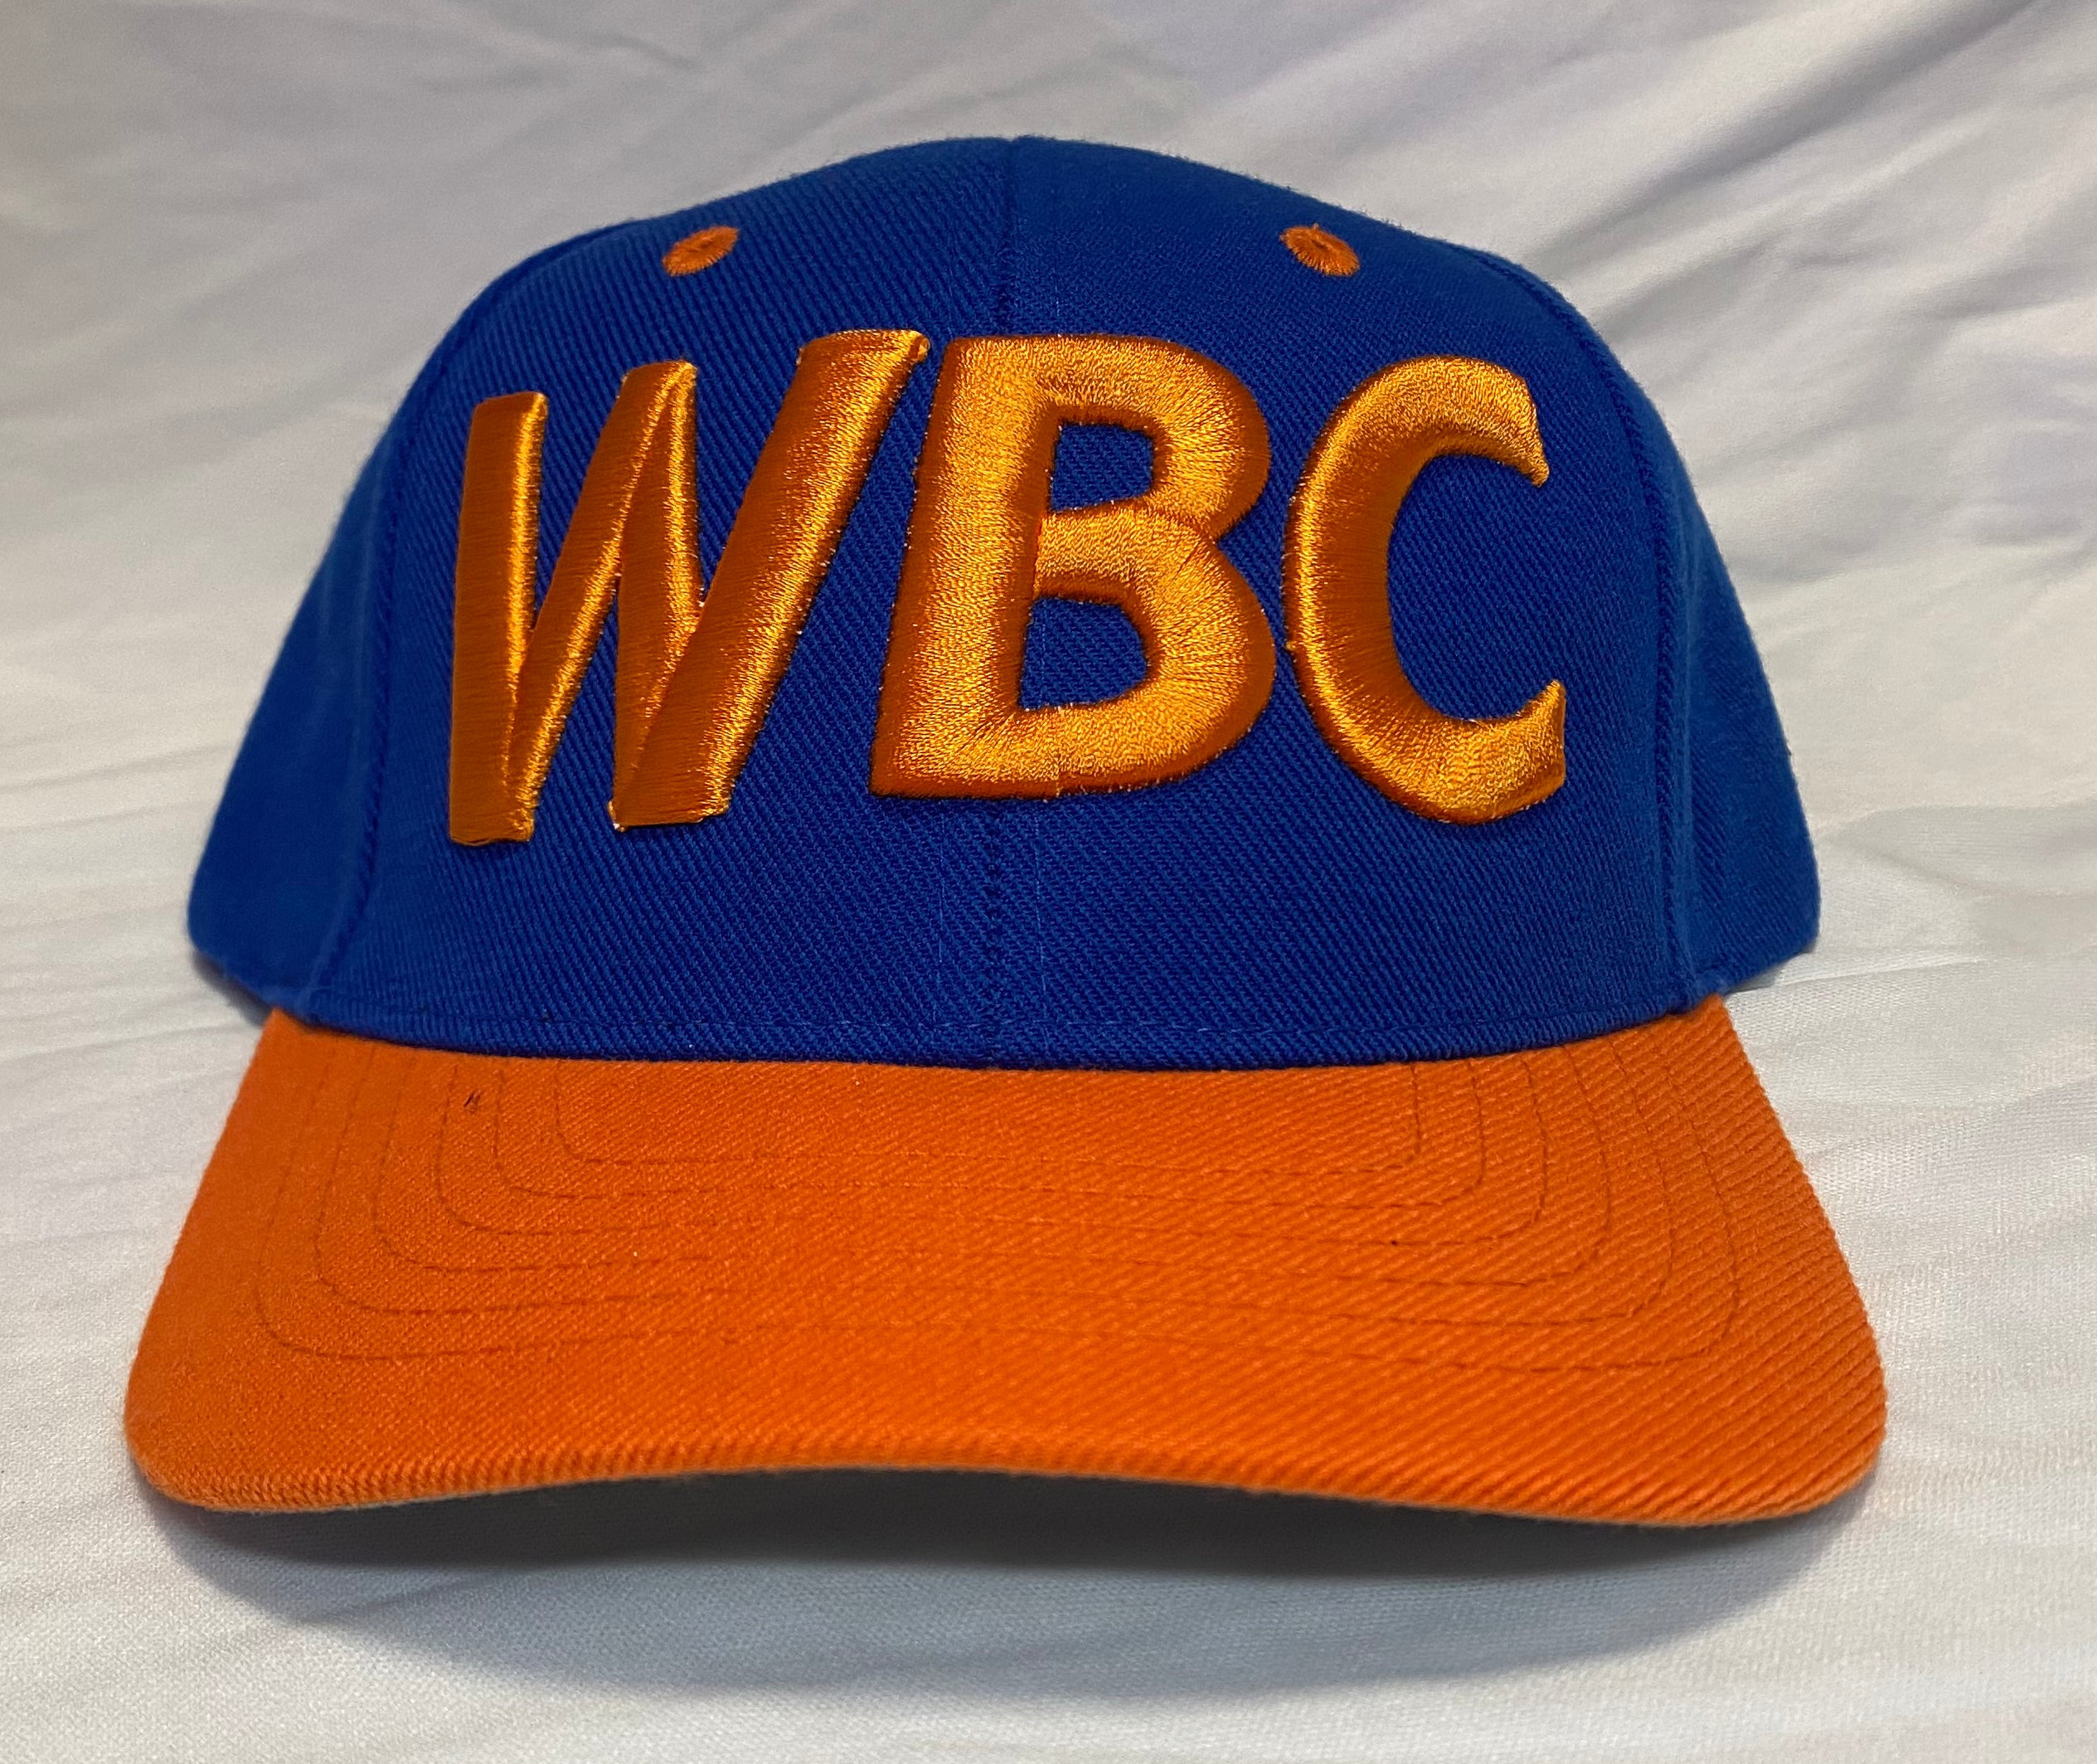 BLUE WBC ORANGE LETTERING BASEBALL HAT